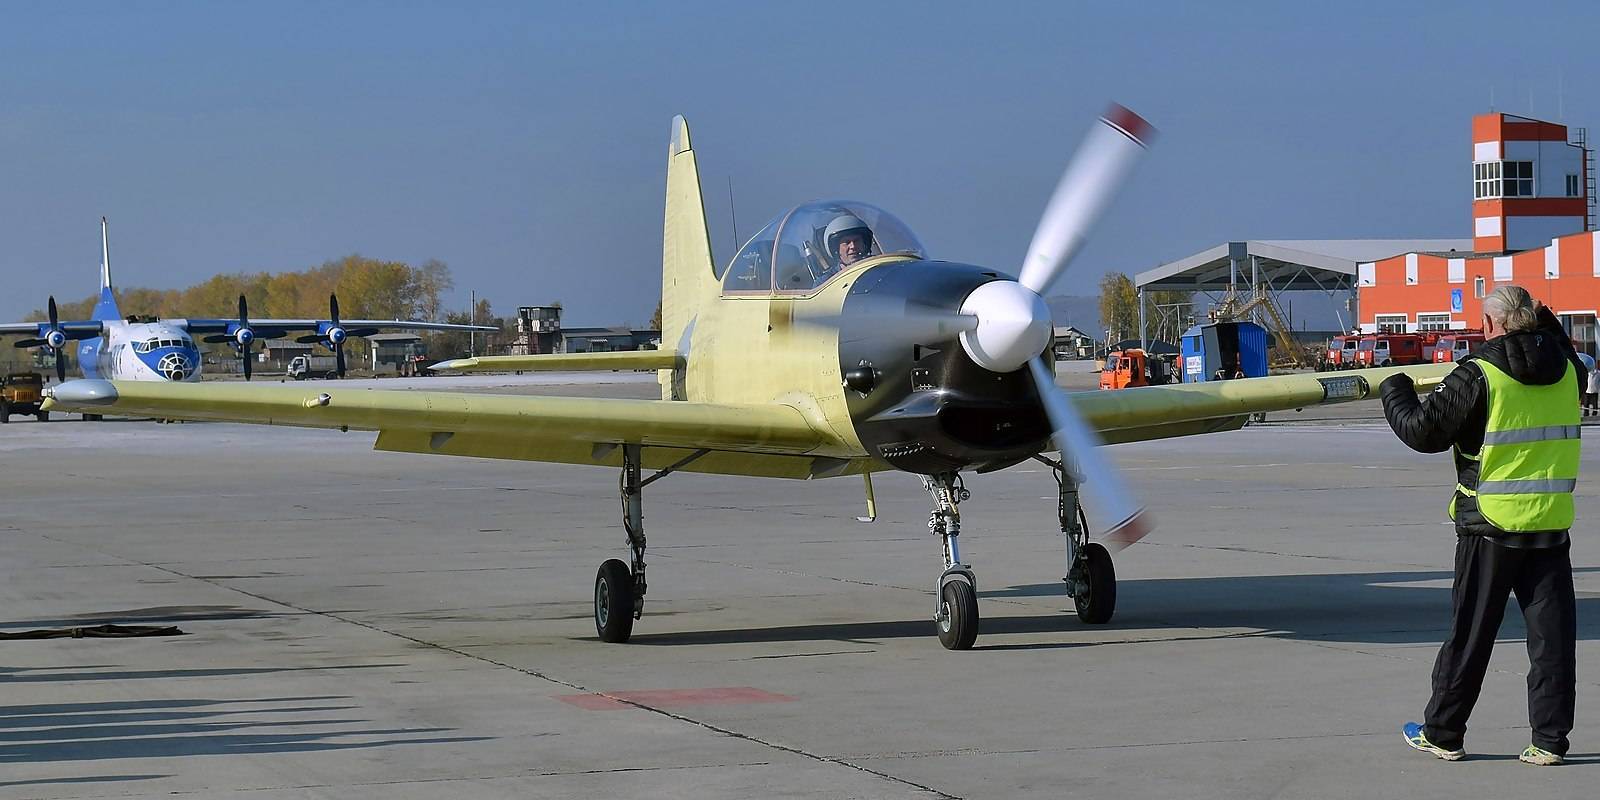 Як-52 - советский спортивно-учебно-тренировочный самолёт
як-52 - советский спортивно-учебно-тренировочный самолёт